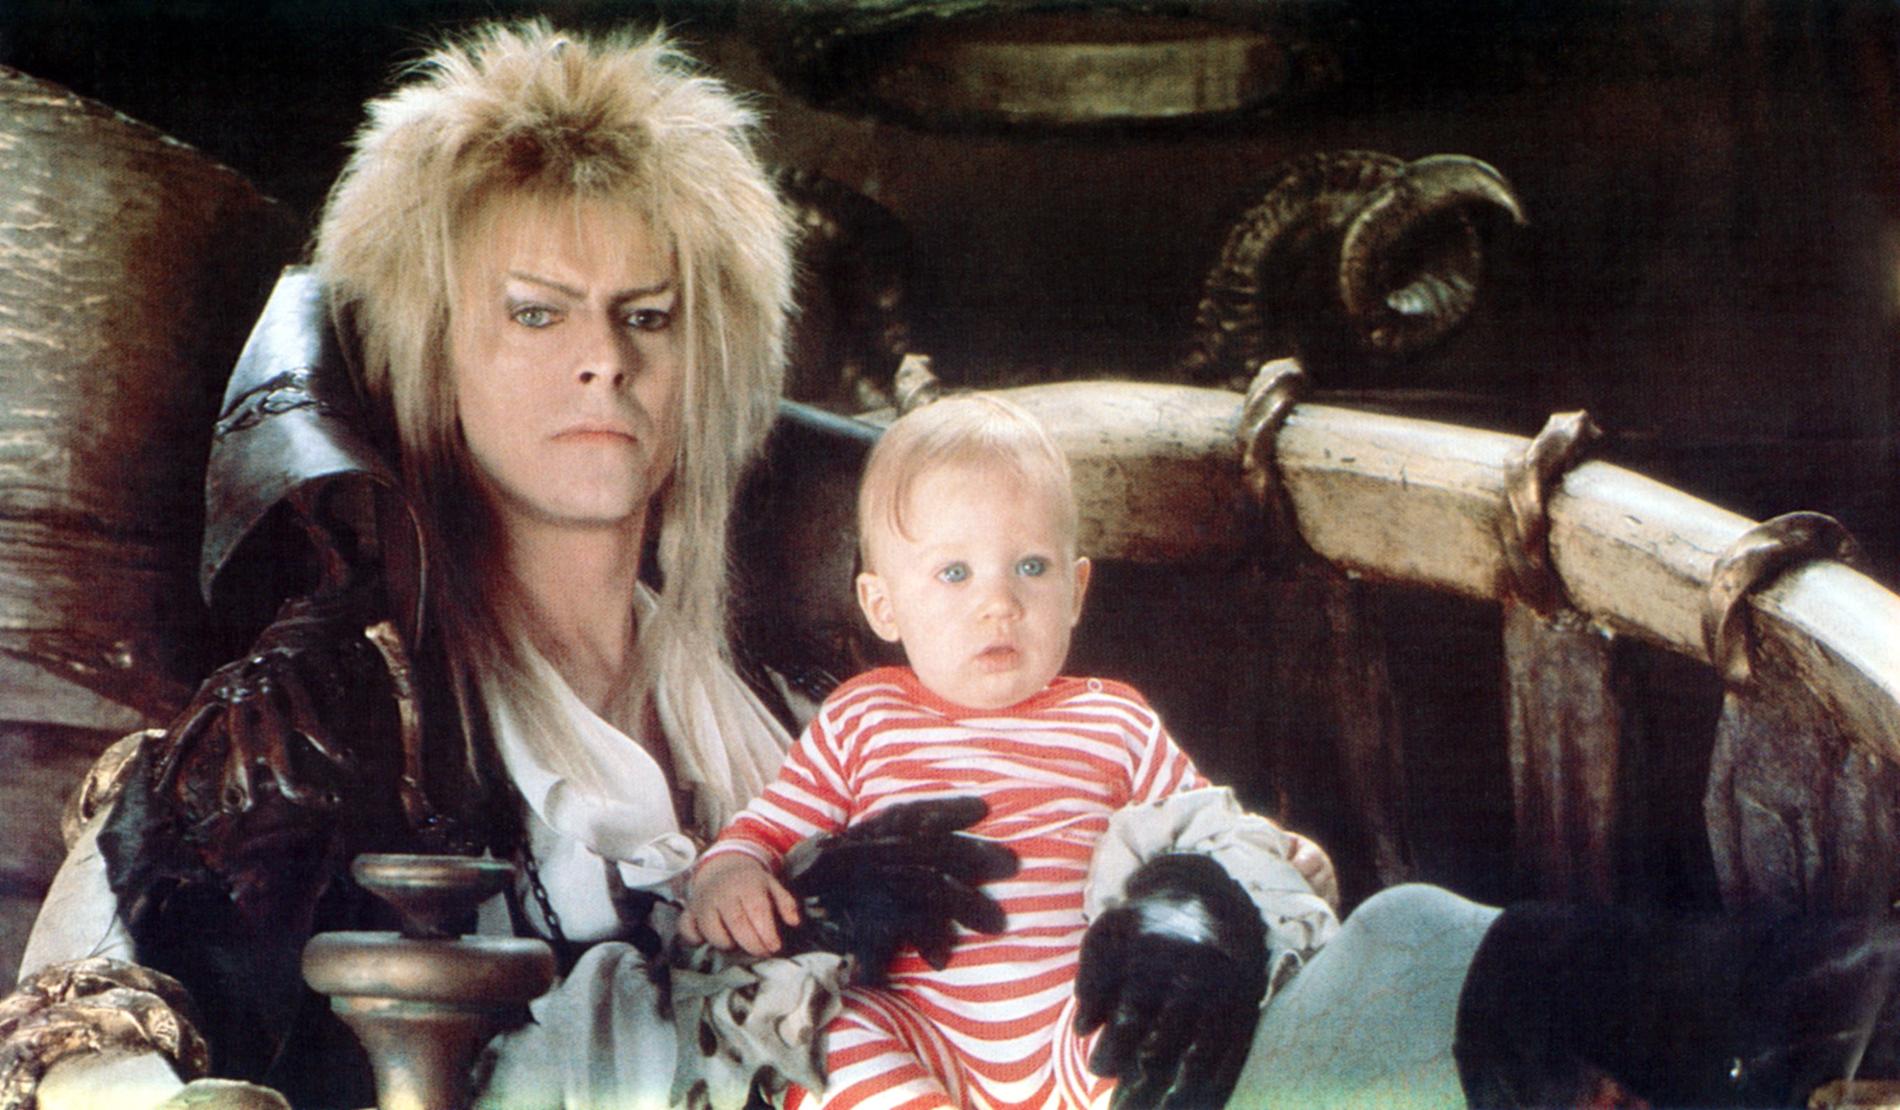 David Bowie i rollen som Goblingkungen Jareth i fantasyfilmen Labyrinth från 1986